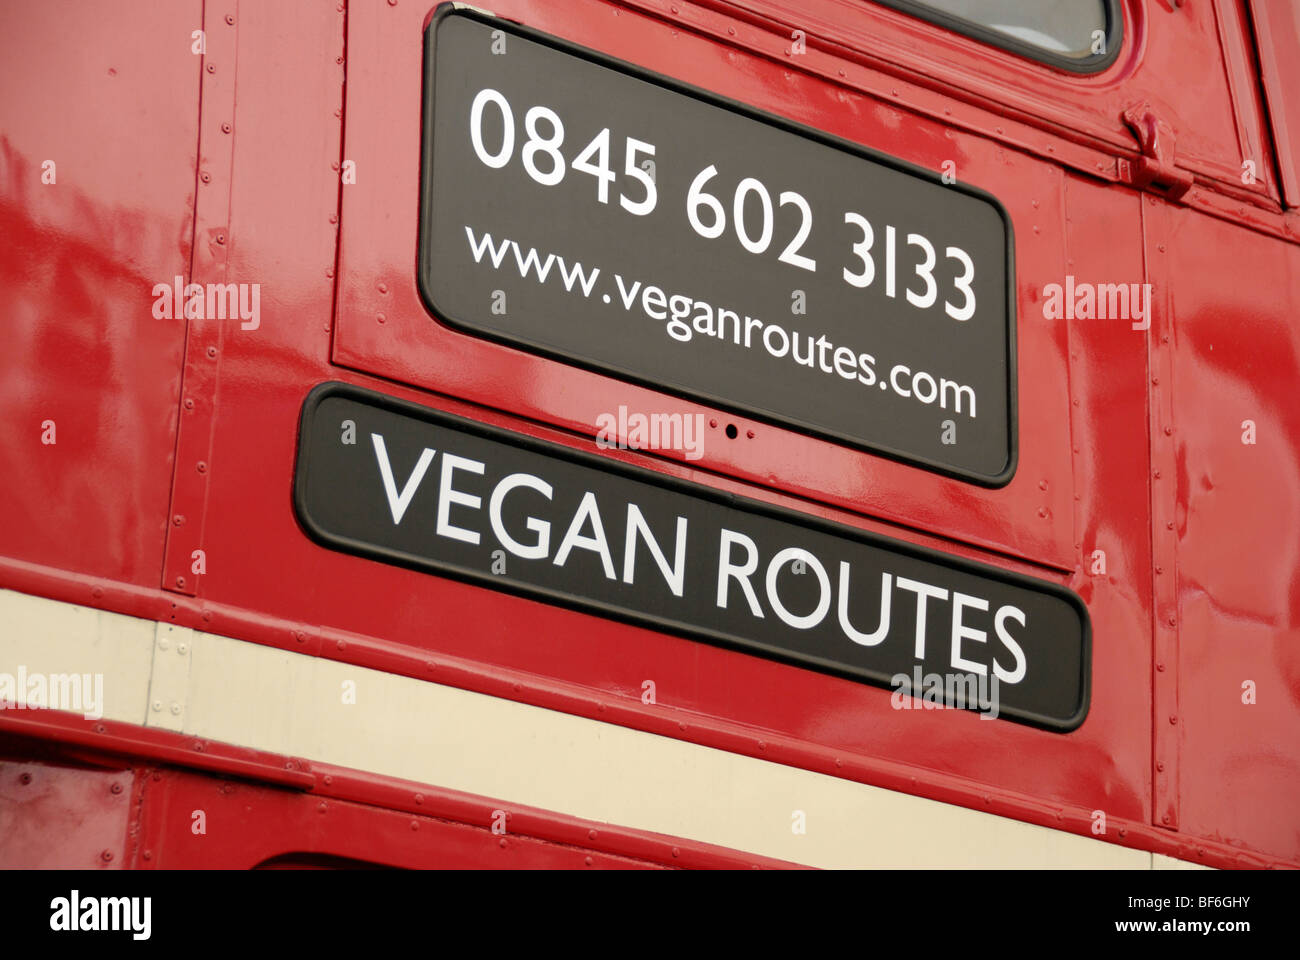 Werbung für vegane Routen Restaurant auf einem roten Londoner Routemaster bus Stockfoto